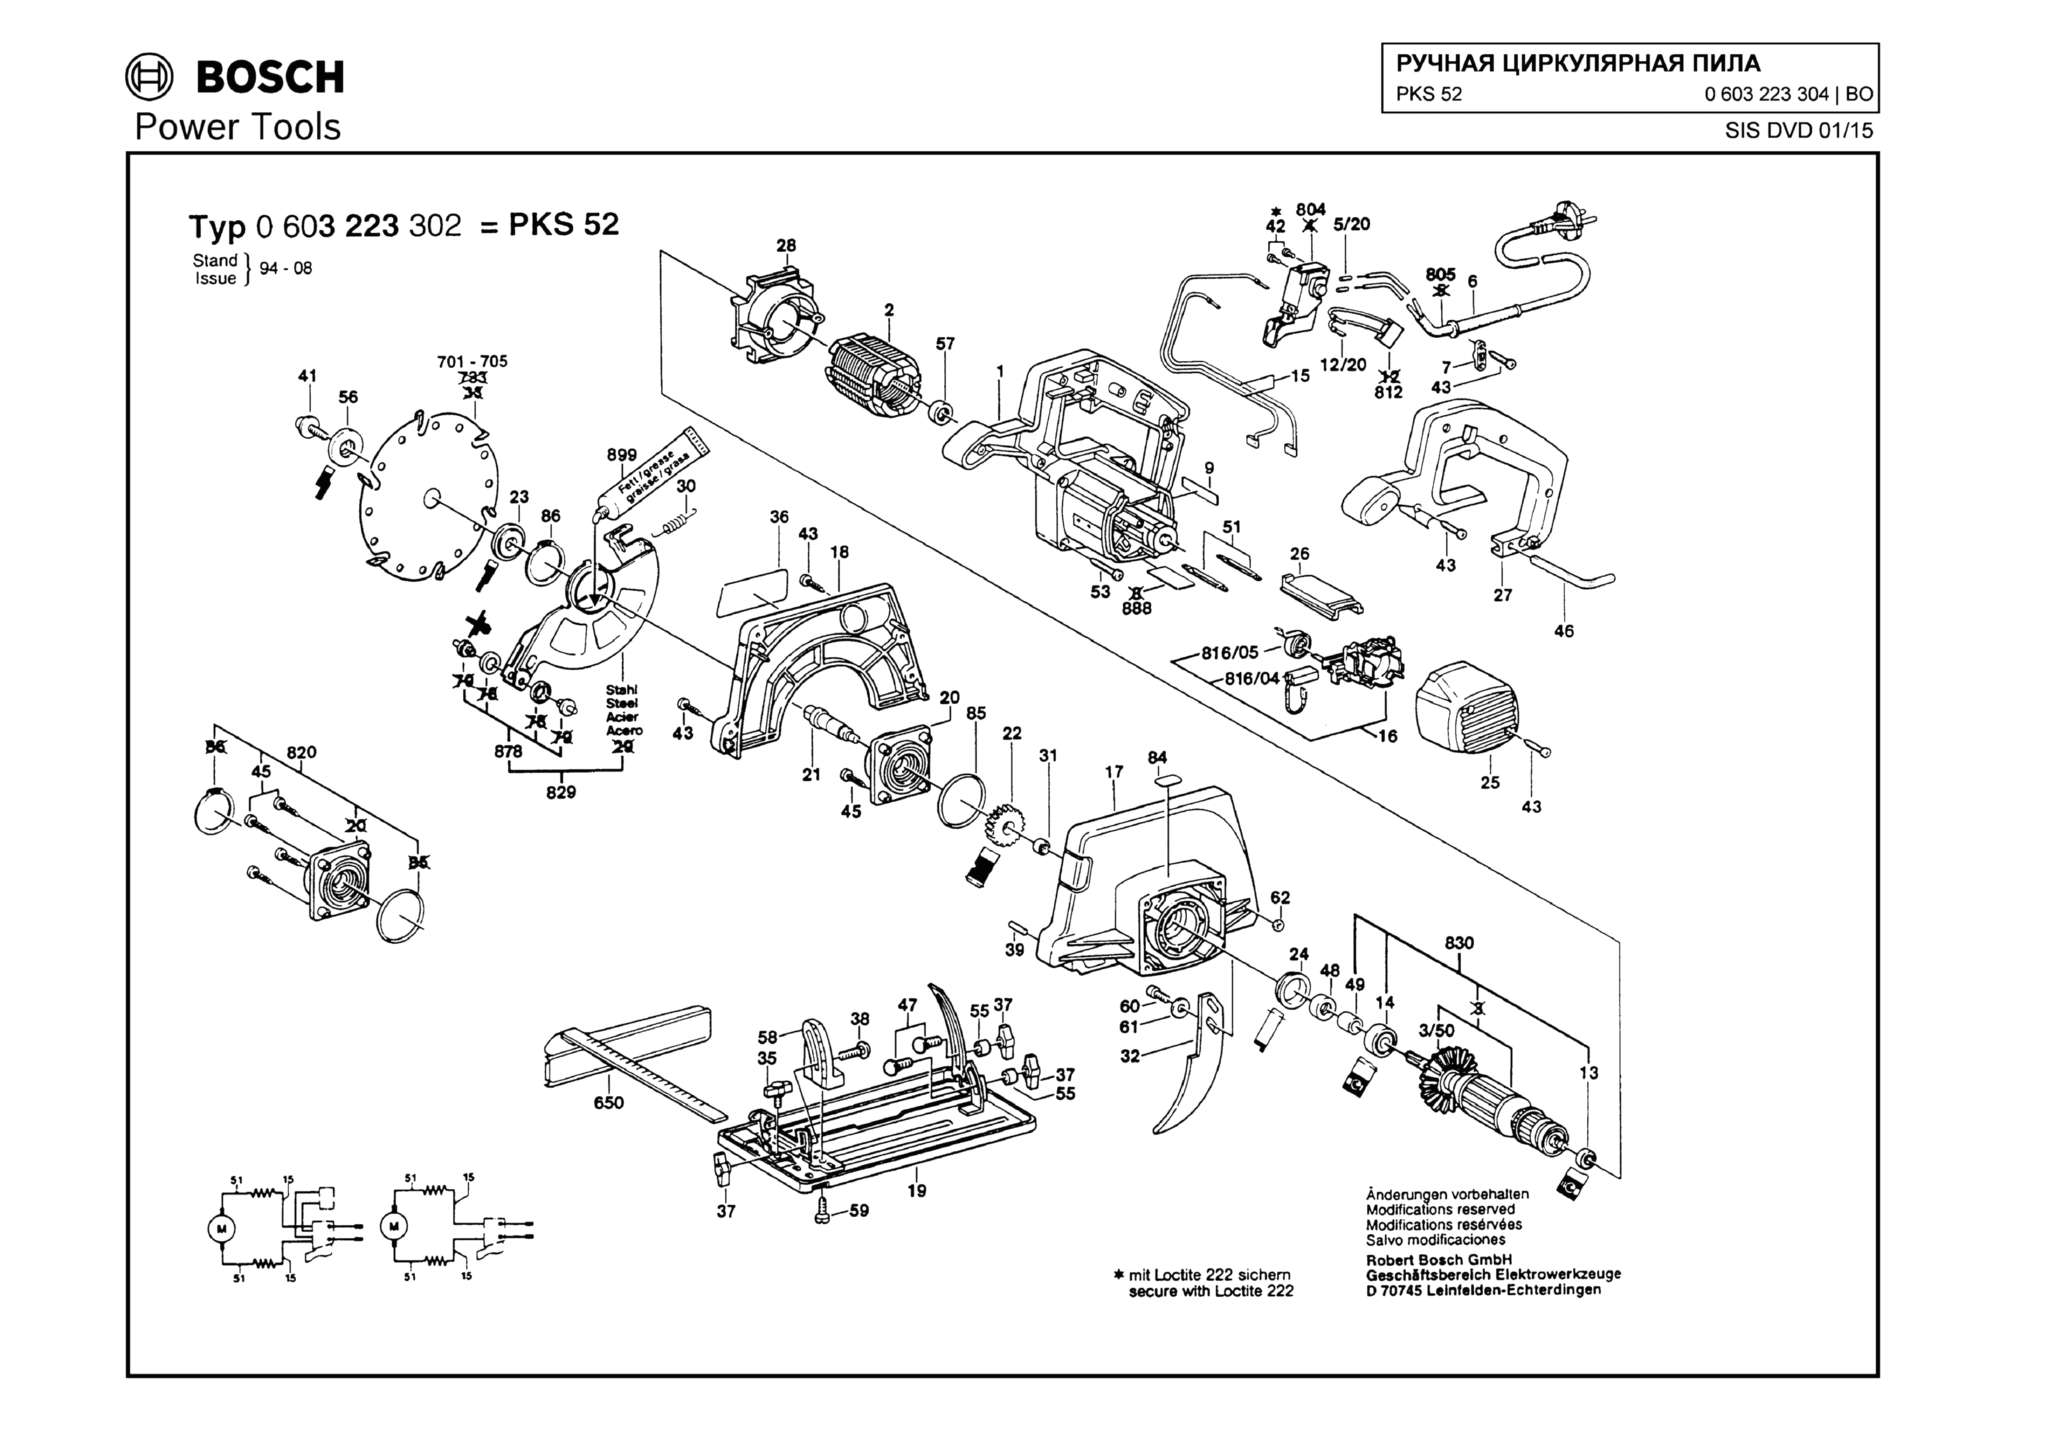 Запчасти, схема и деталировка Bosch PKS 52 (ТИП 0603223304)